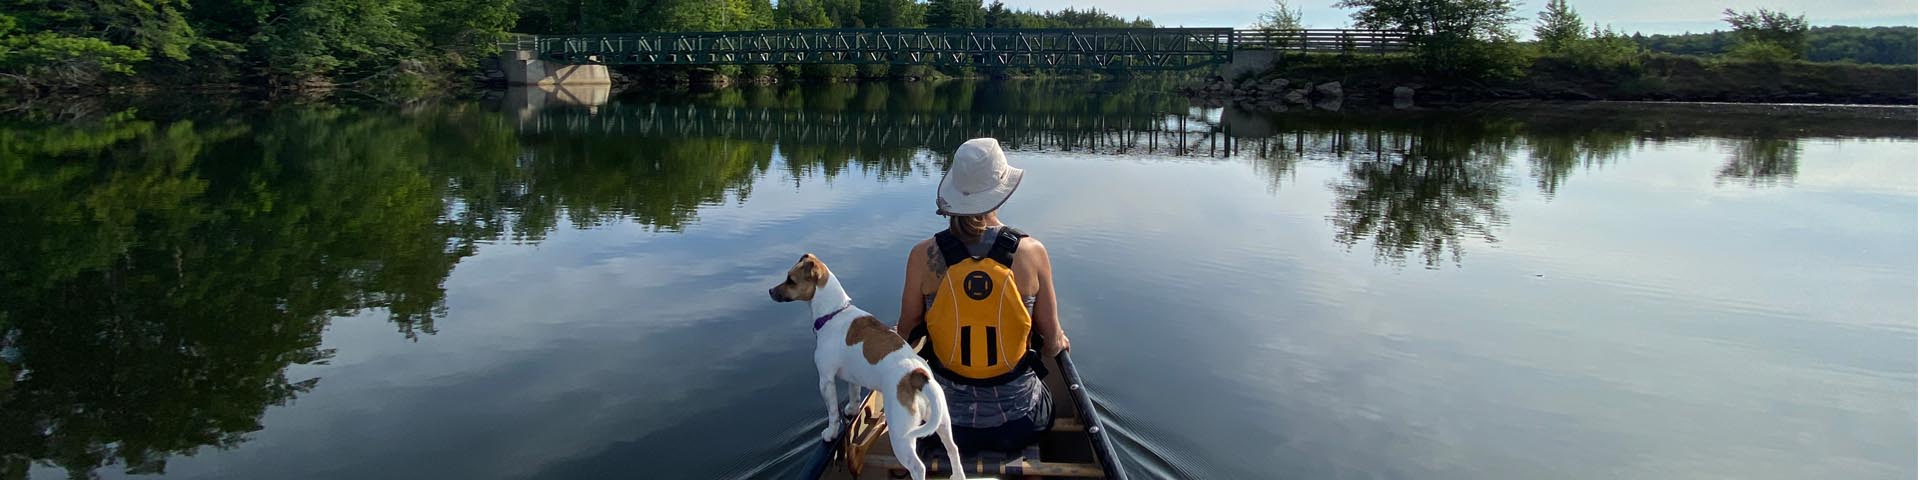 Une femme et un chien font du canoë sur une rivière. Ils sont de dos et font face à la caméra. Des arbres les entourent et devant eux, il y a une passerelle. 